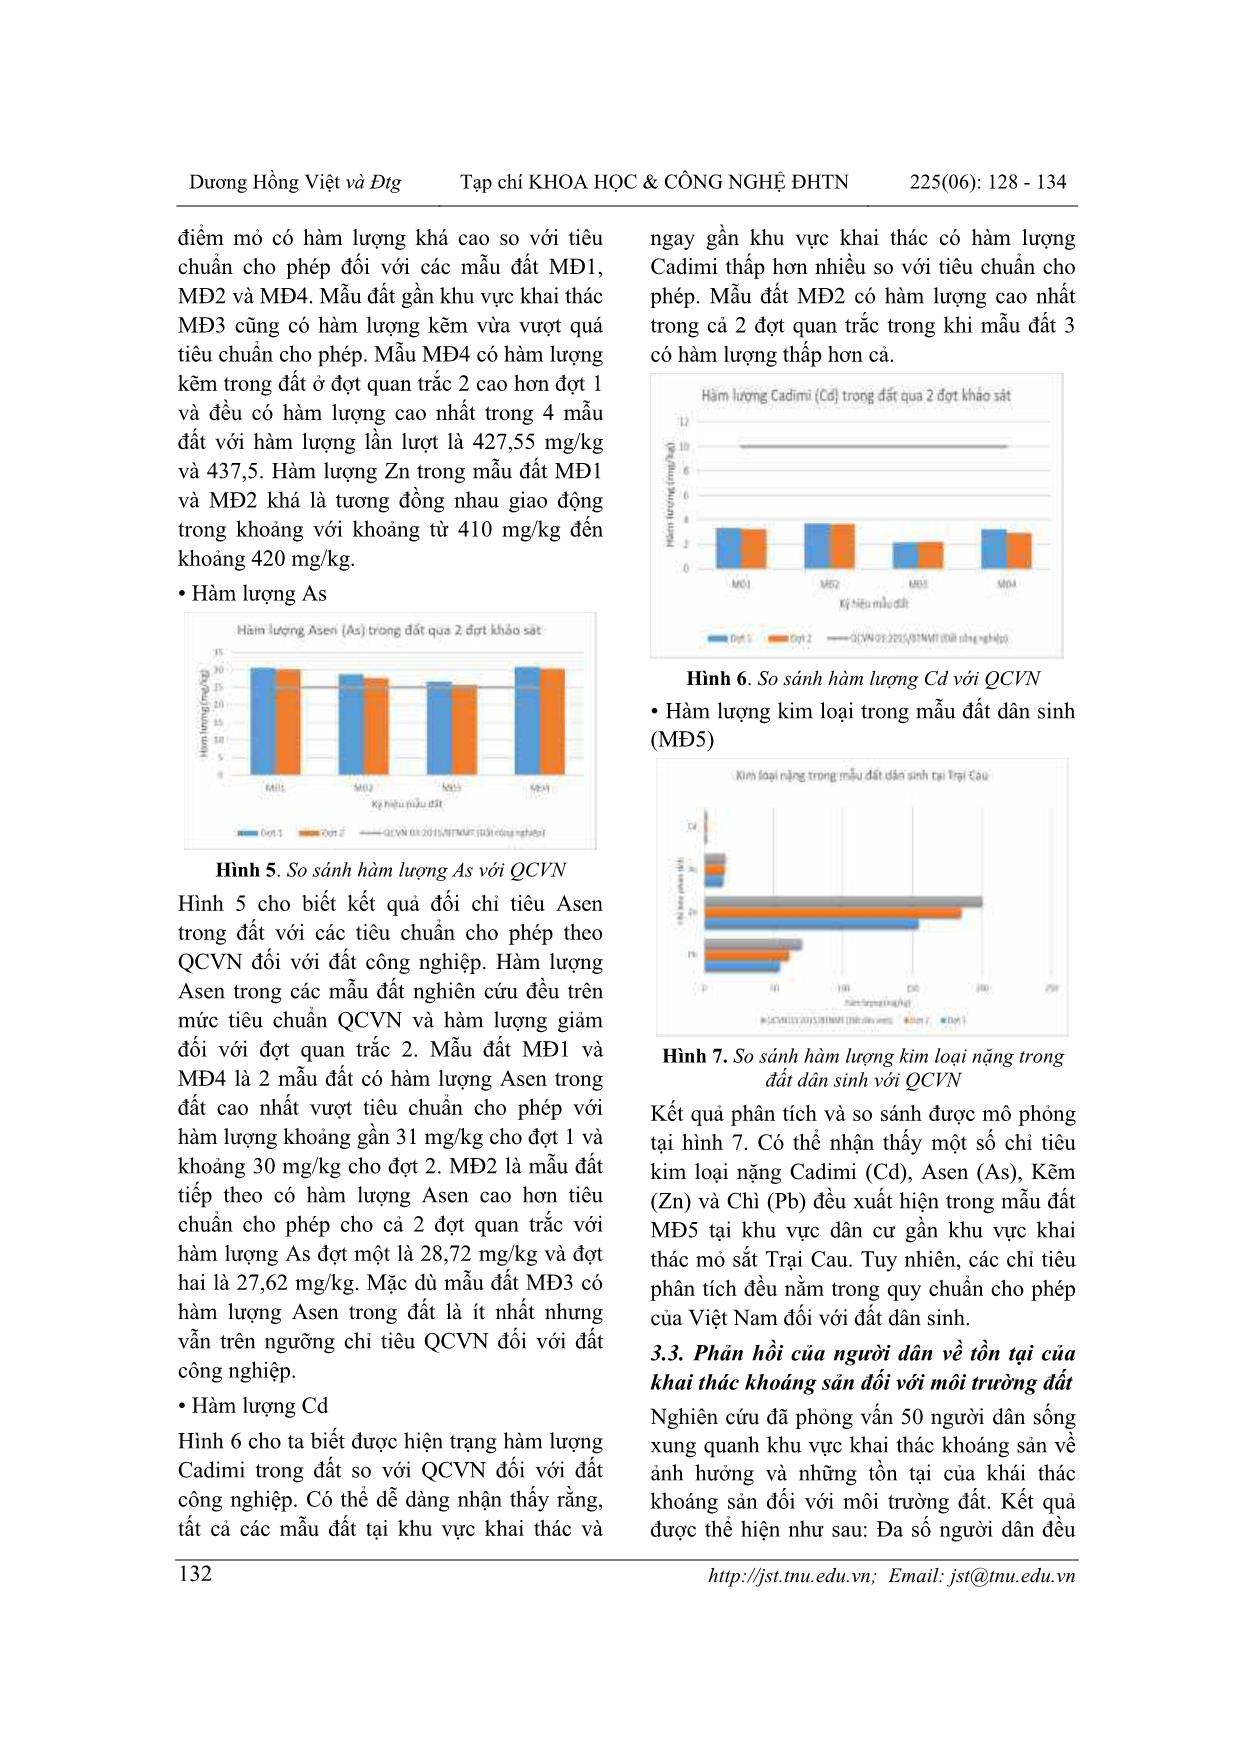 Nghiên cứu ảnh hưởng của khai thác khoáng sản tới tài nguyên đất tại thị trấn Trại Cau, huyện Đồng Hỷ, Thái Nguyên trang 5